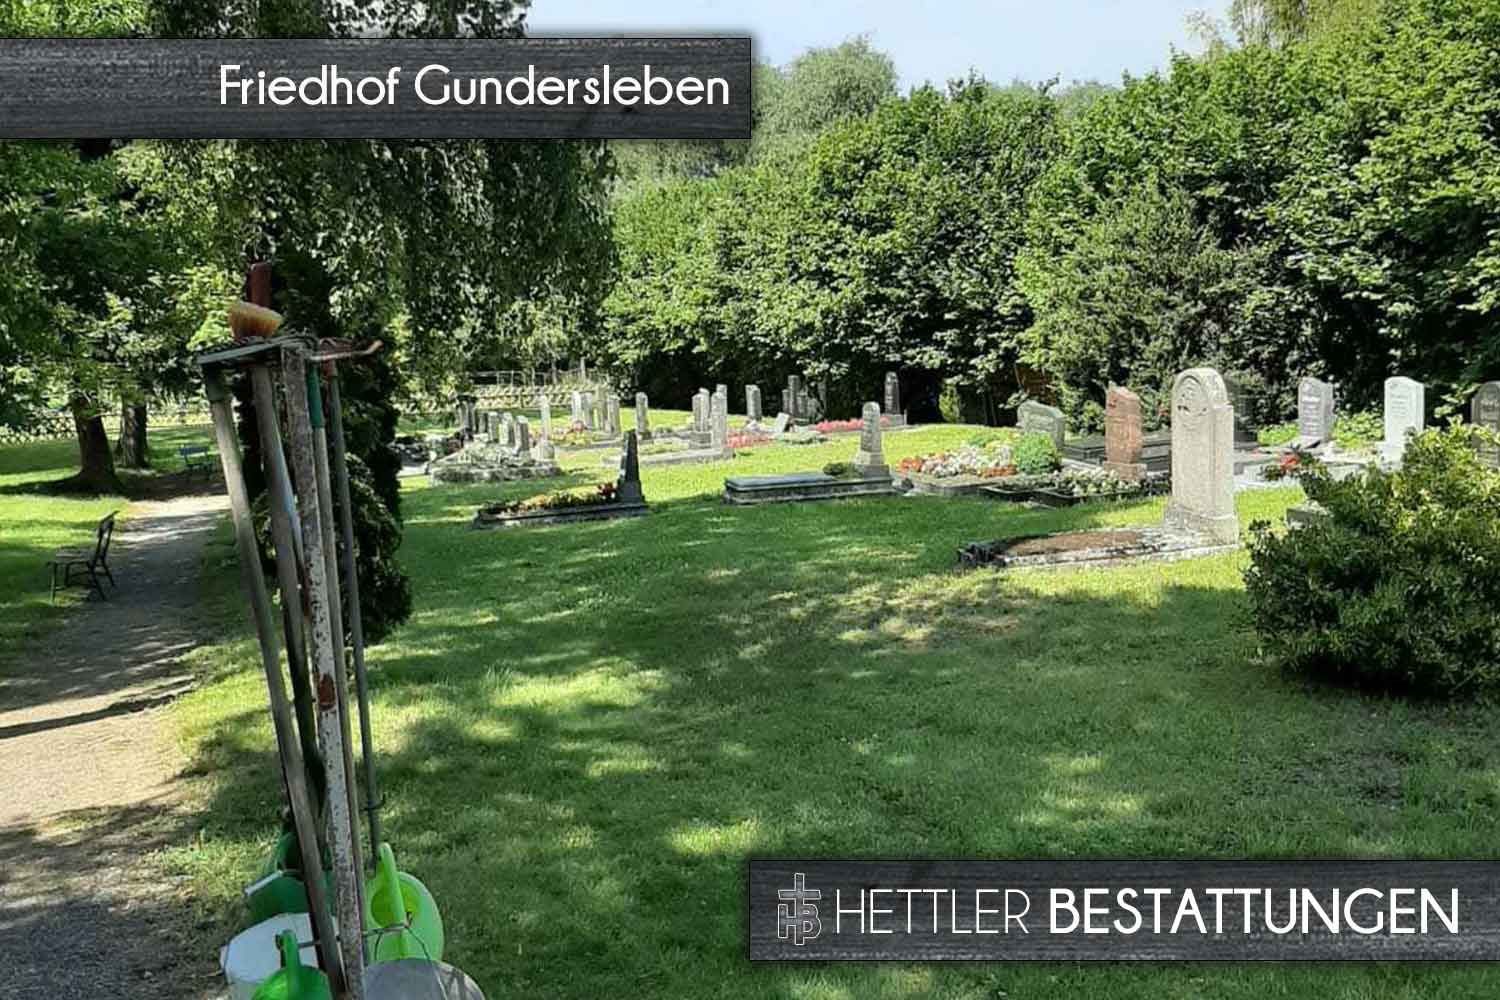 Friedhof in Gundersleben. Ihr Ort des Abschieds mit Hettler Bestattungen.